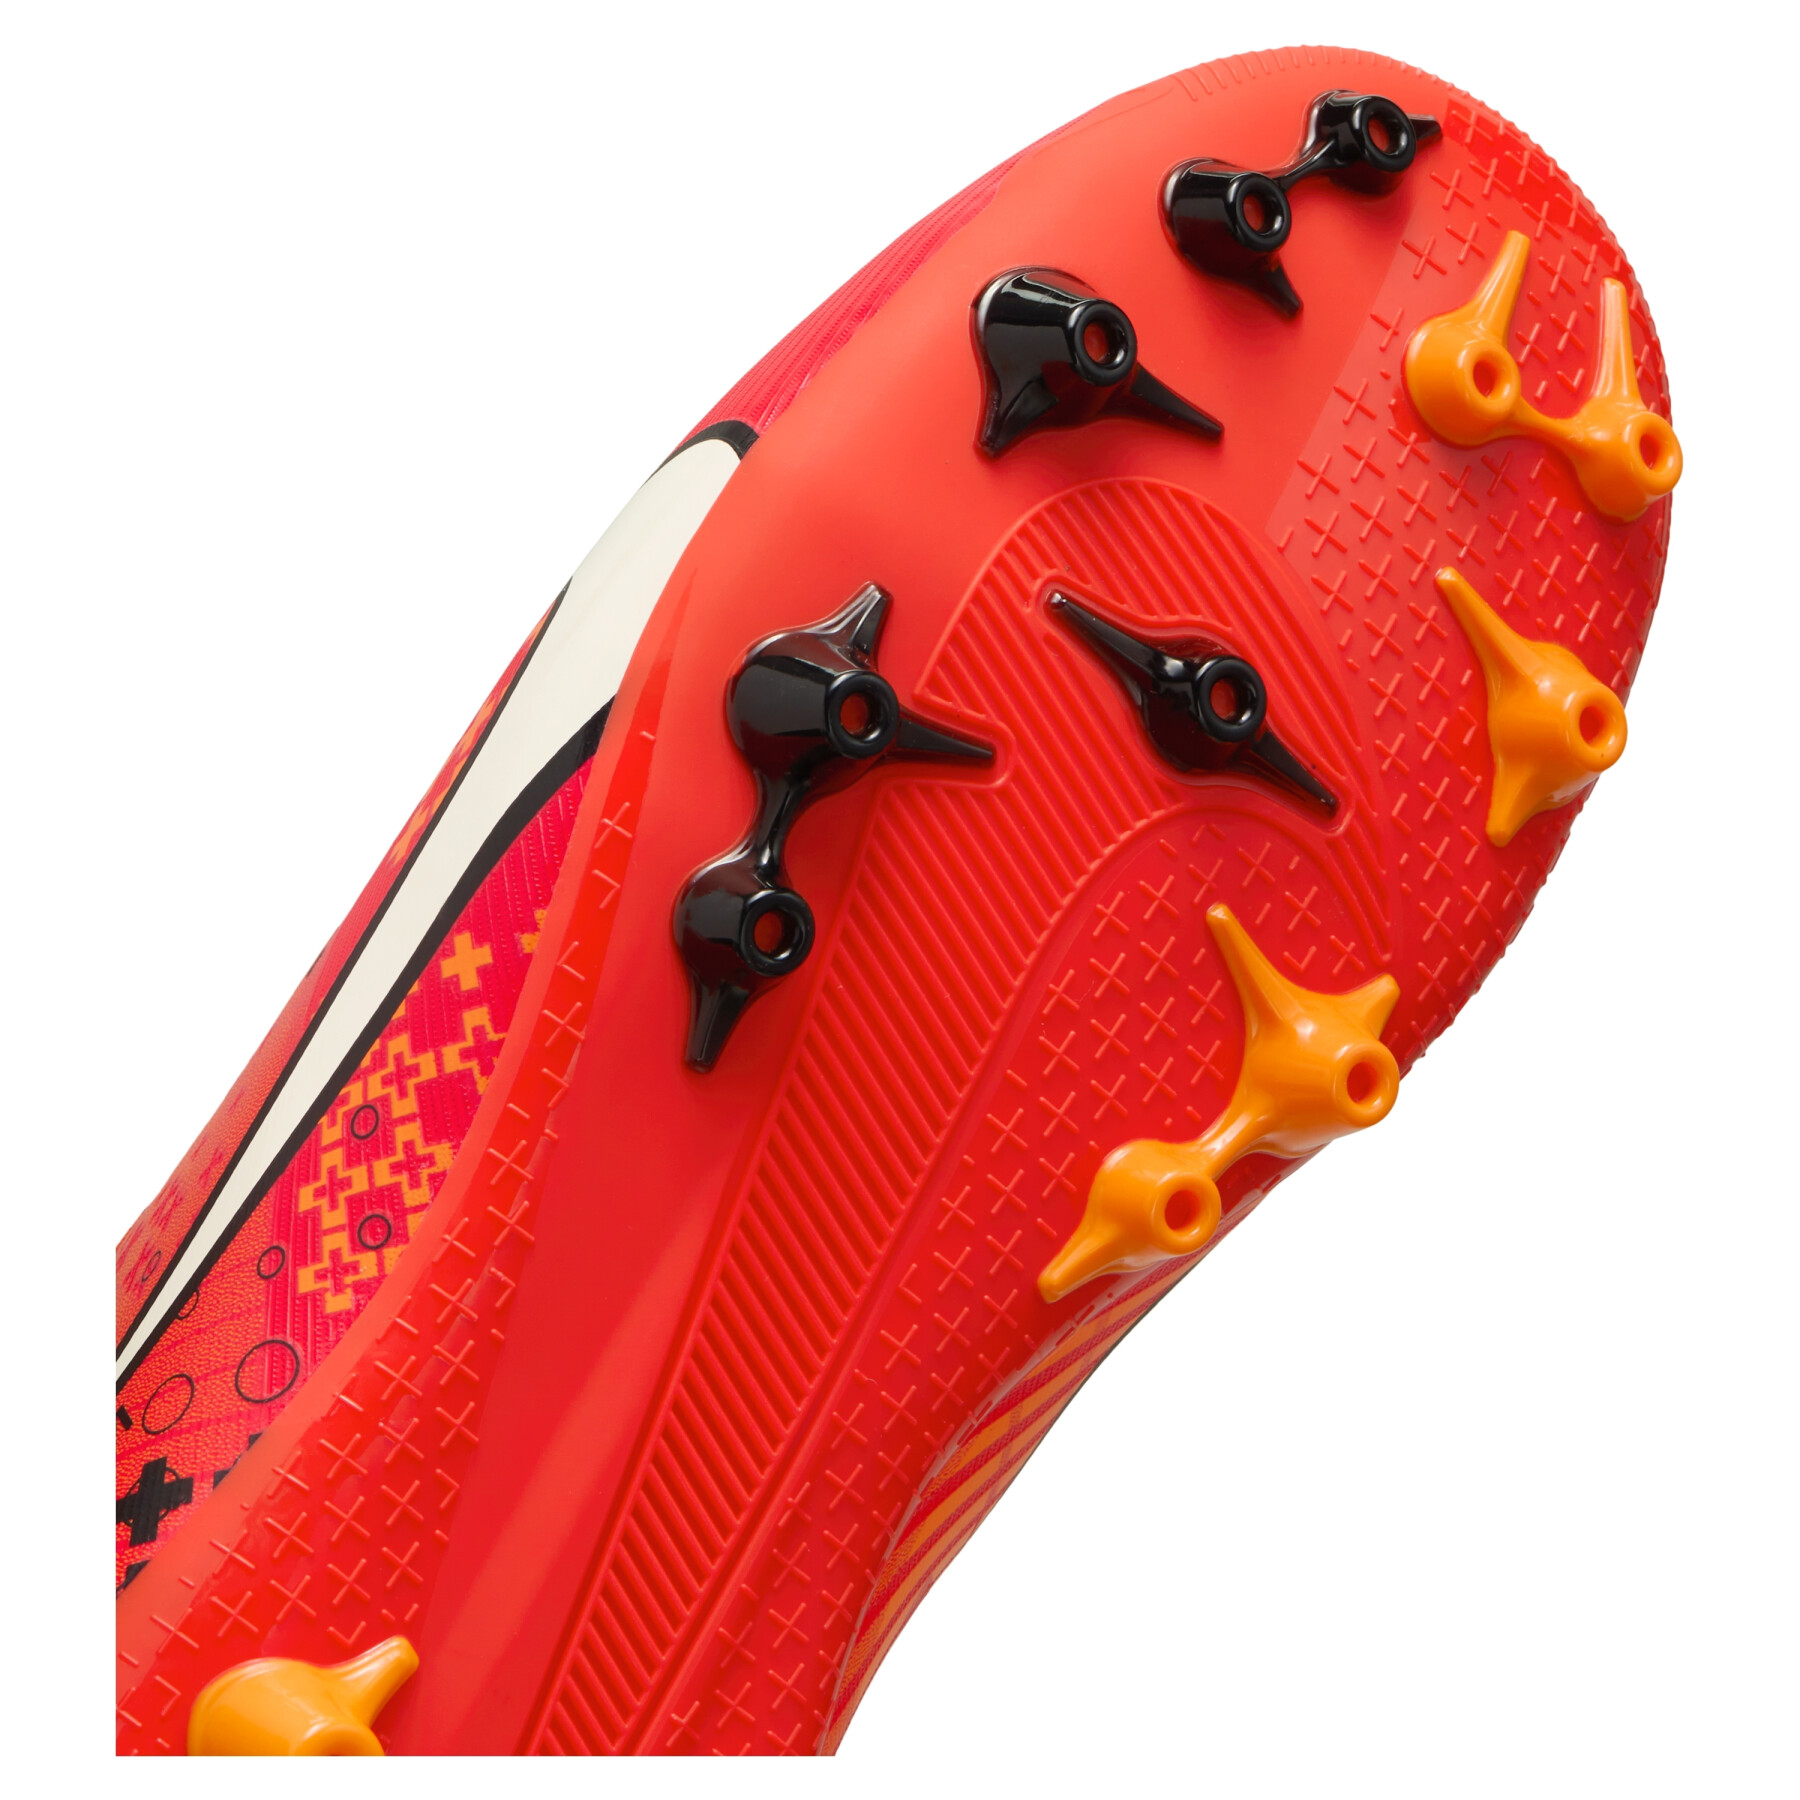 Sapatos de futebol para crianças Nike Zoom Superfly 9 Academy MDS AG